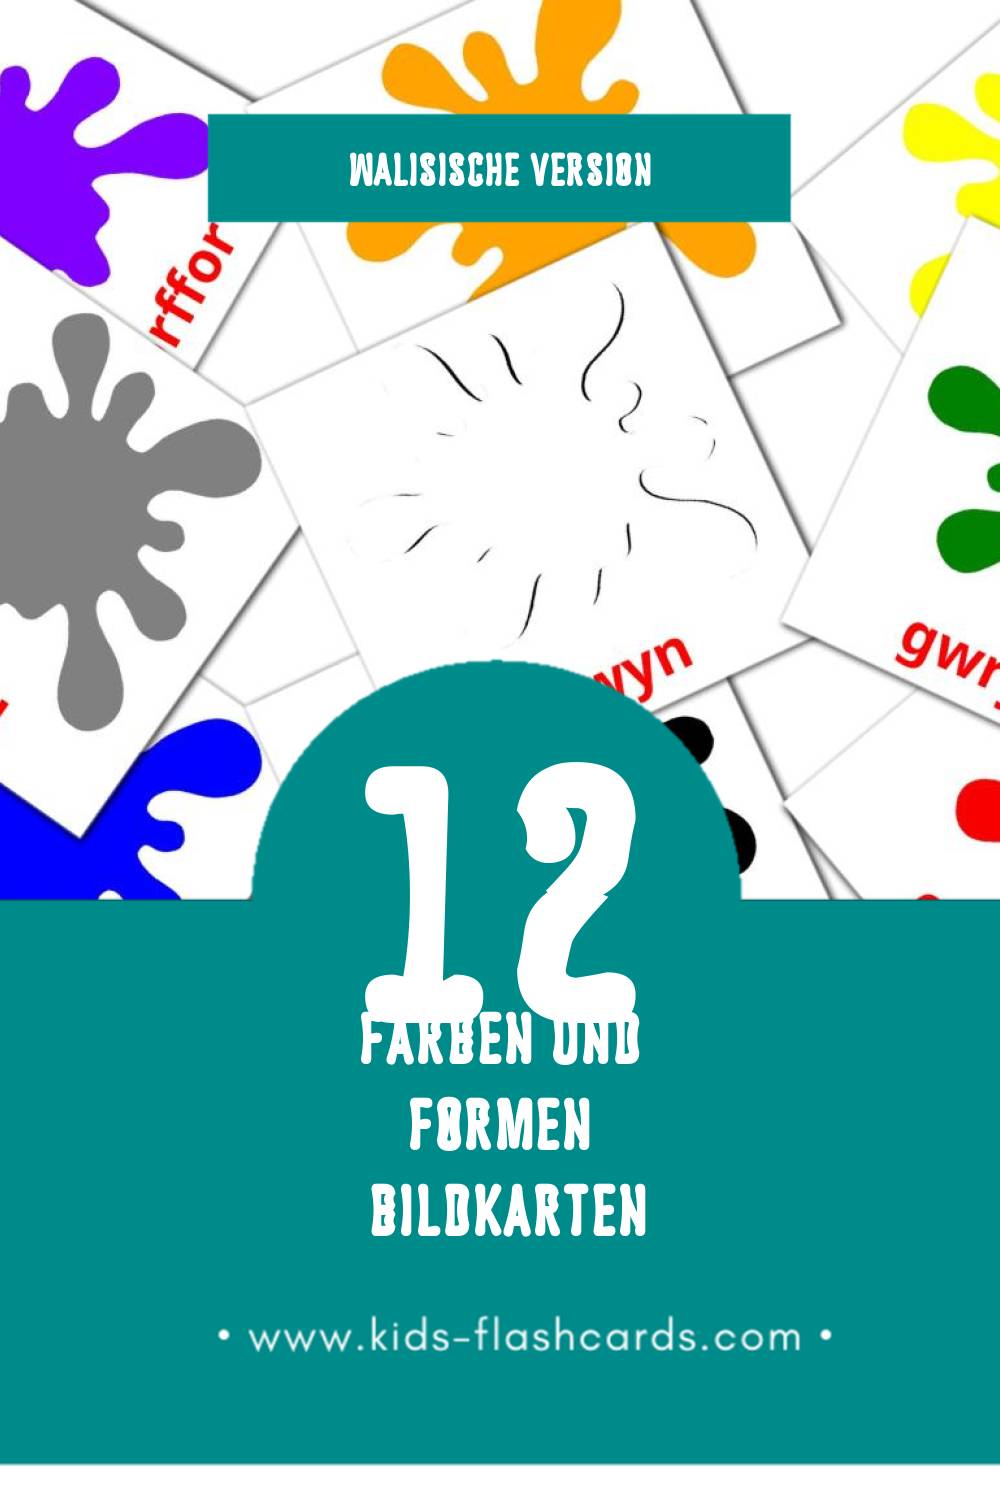 Visual Lliwiau a siapiau Flashcards für Kleinkinder (12 Karten in Walisisch)